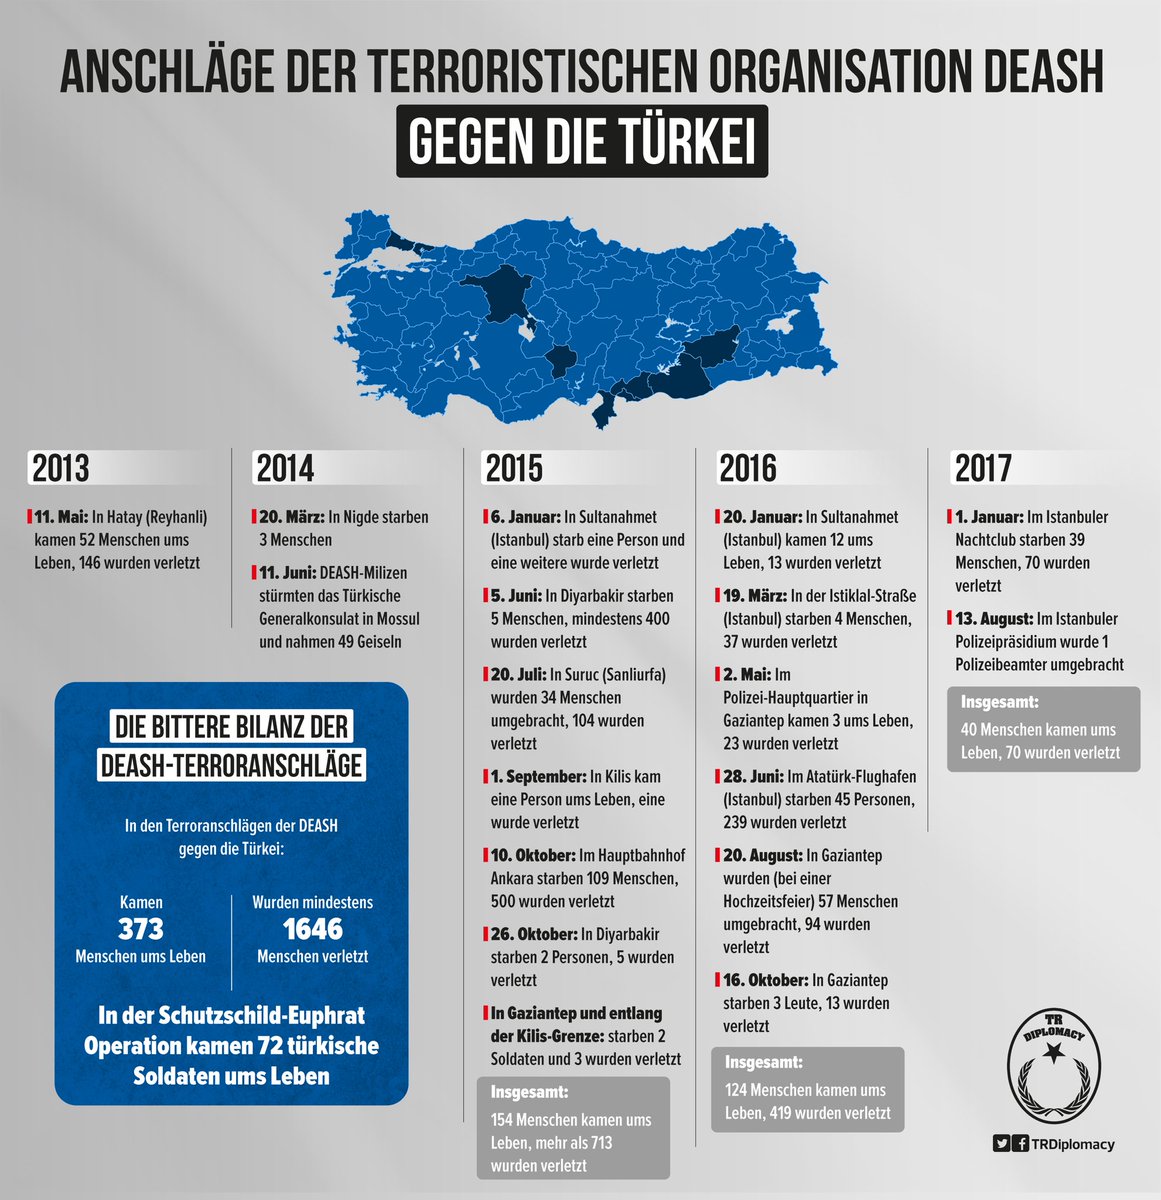 Anschläge der Terrororganization DEASH gegen die Türkei